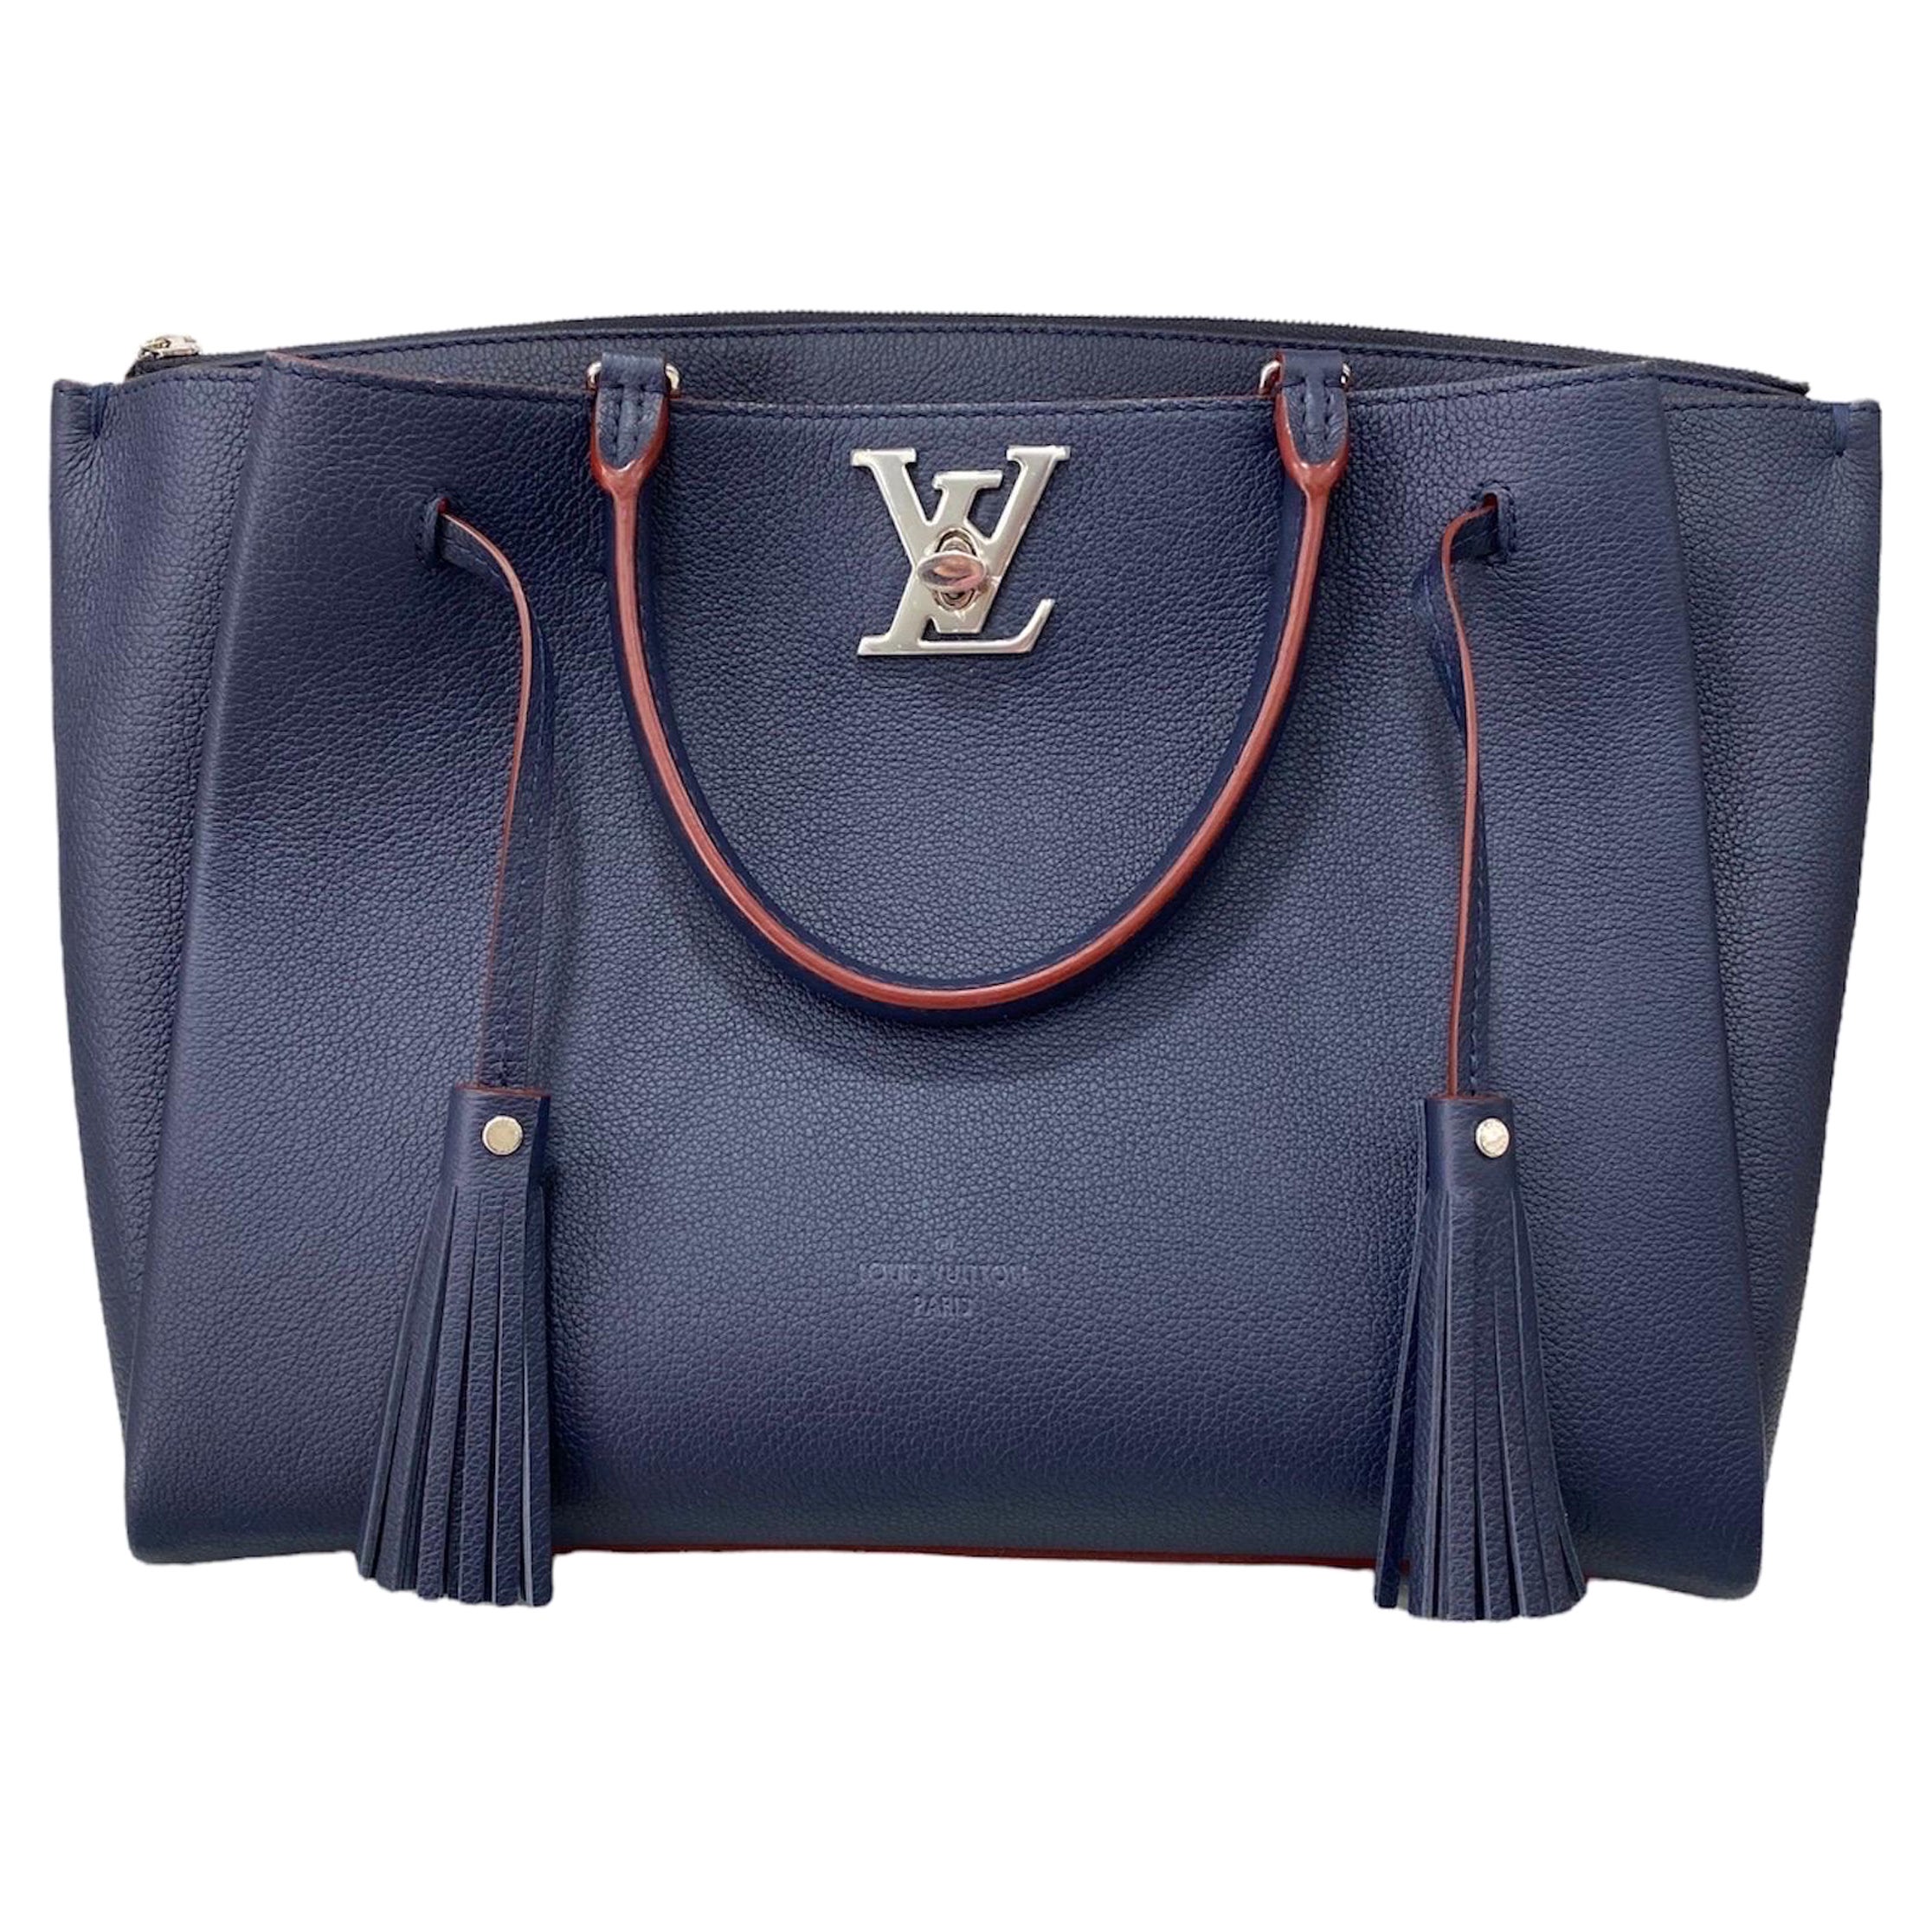 Authentic LOUIS VUITTON WOMEN LOCKME TENDER blue shoulder BAG for Sale in  El Paso, TX - OfferUp